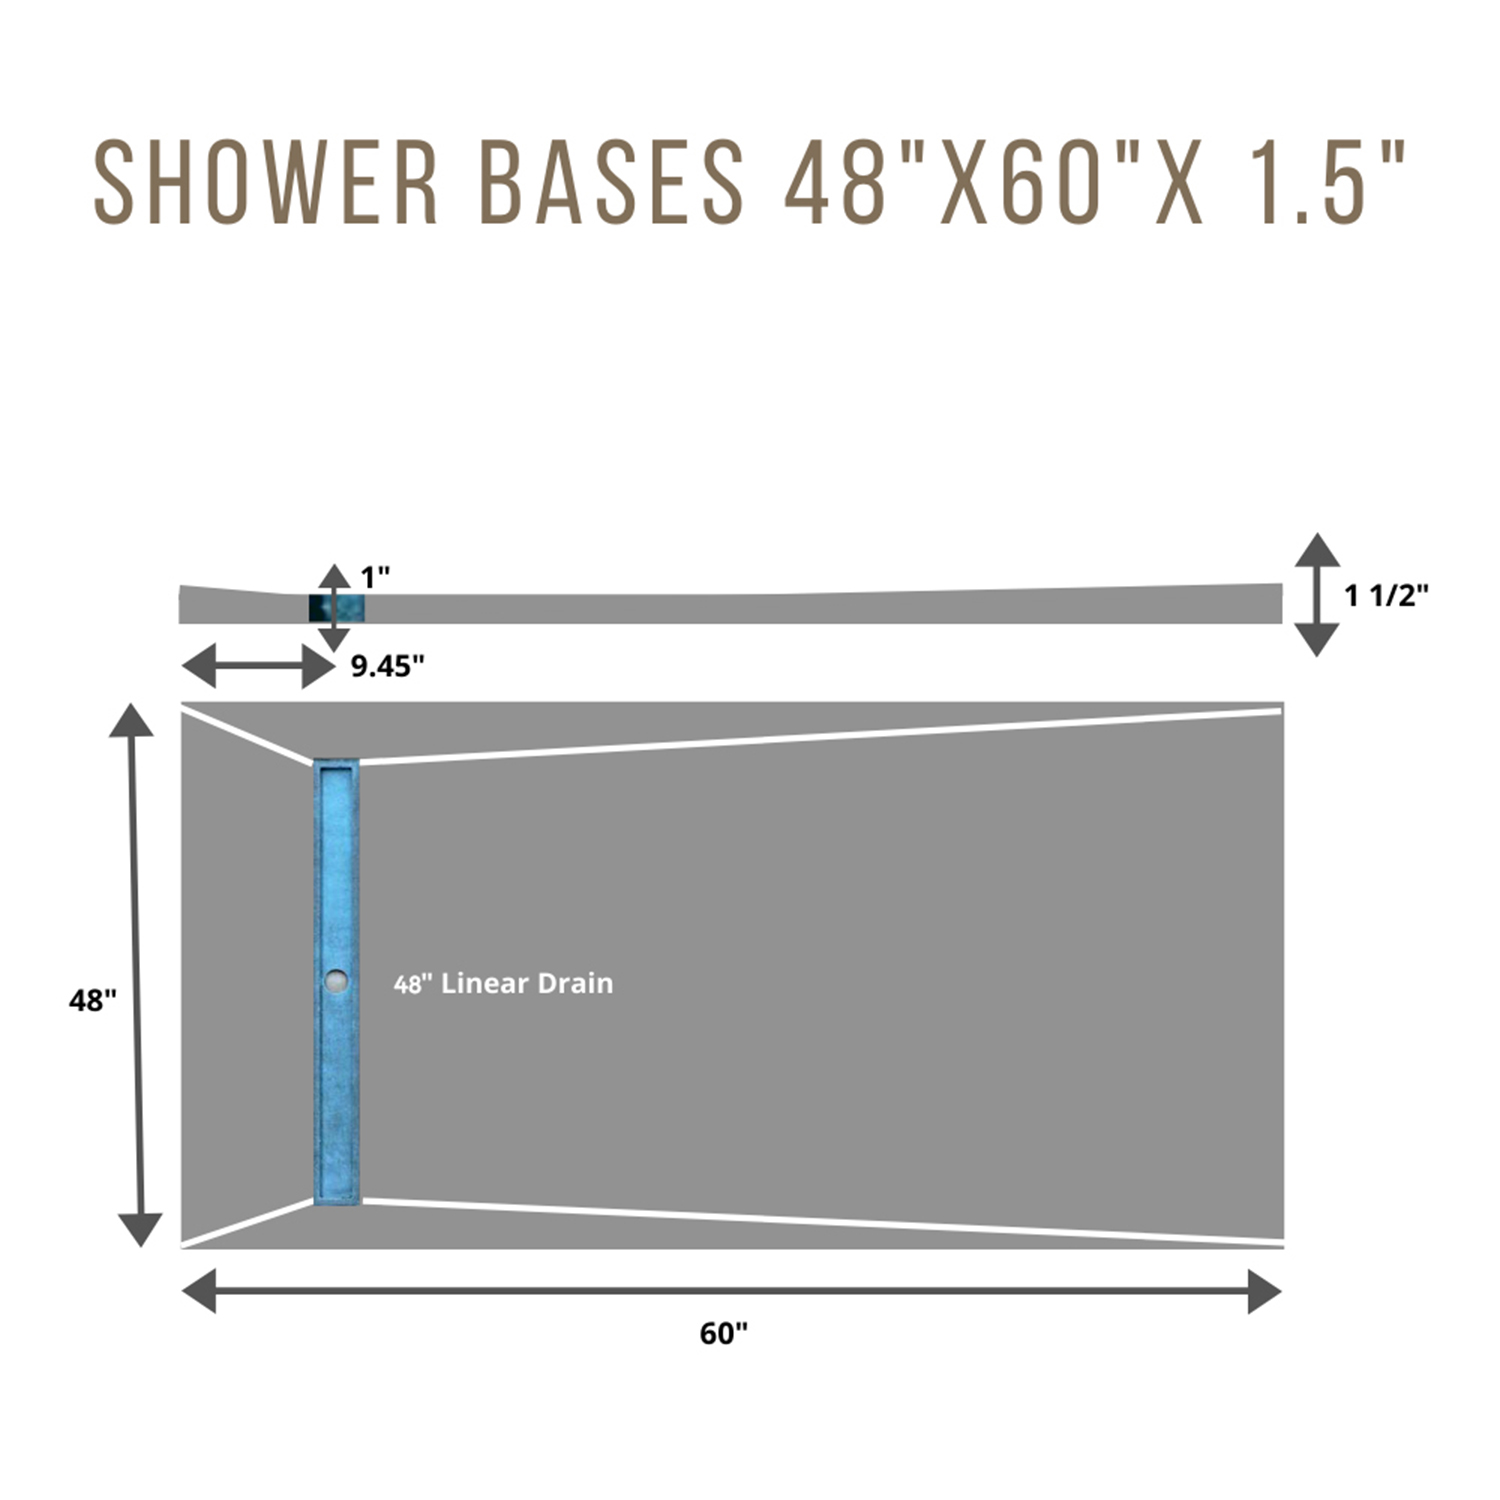 Shower Base 4x5 SIDE 48